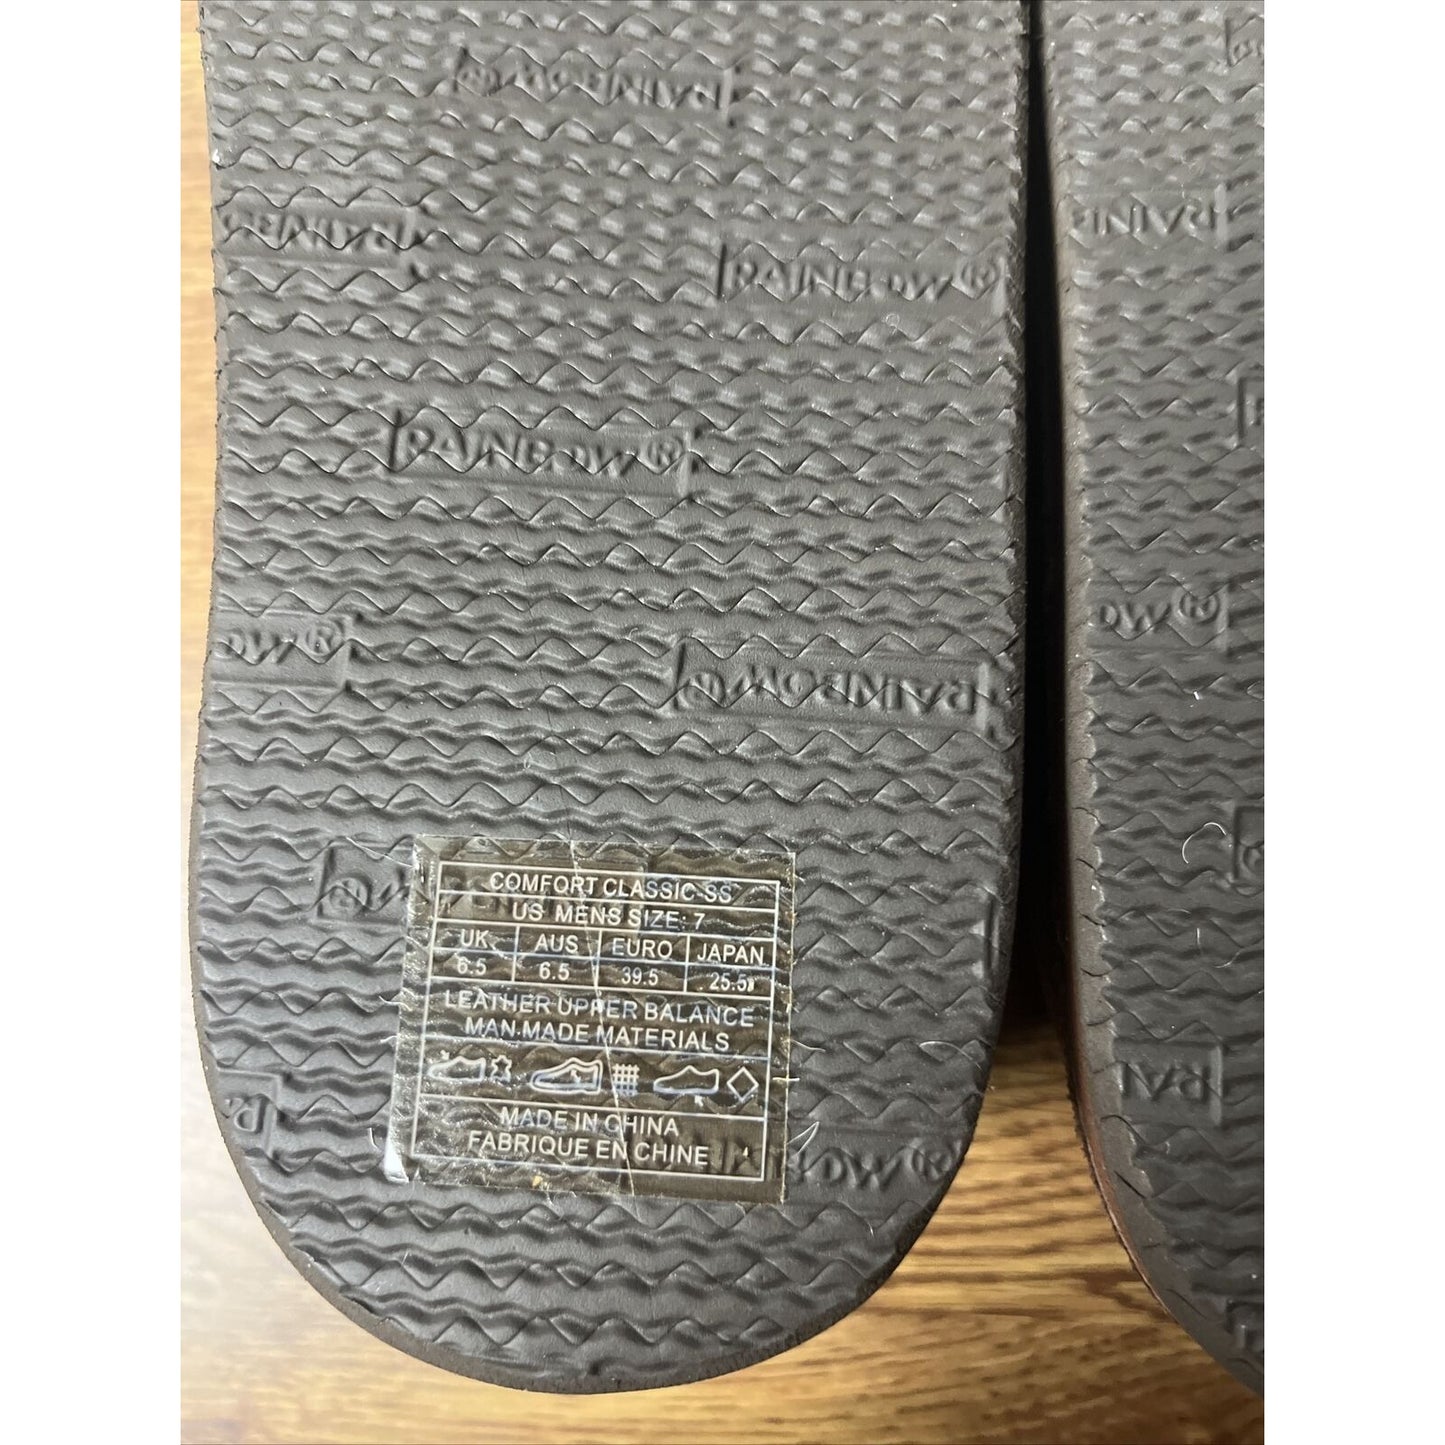 Rainbow Sandals Comfort Classic Fleece Loafers - Men’s 7 - Expresso